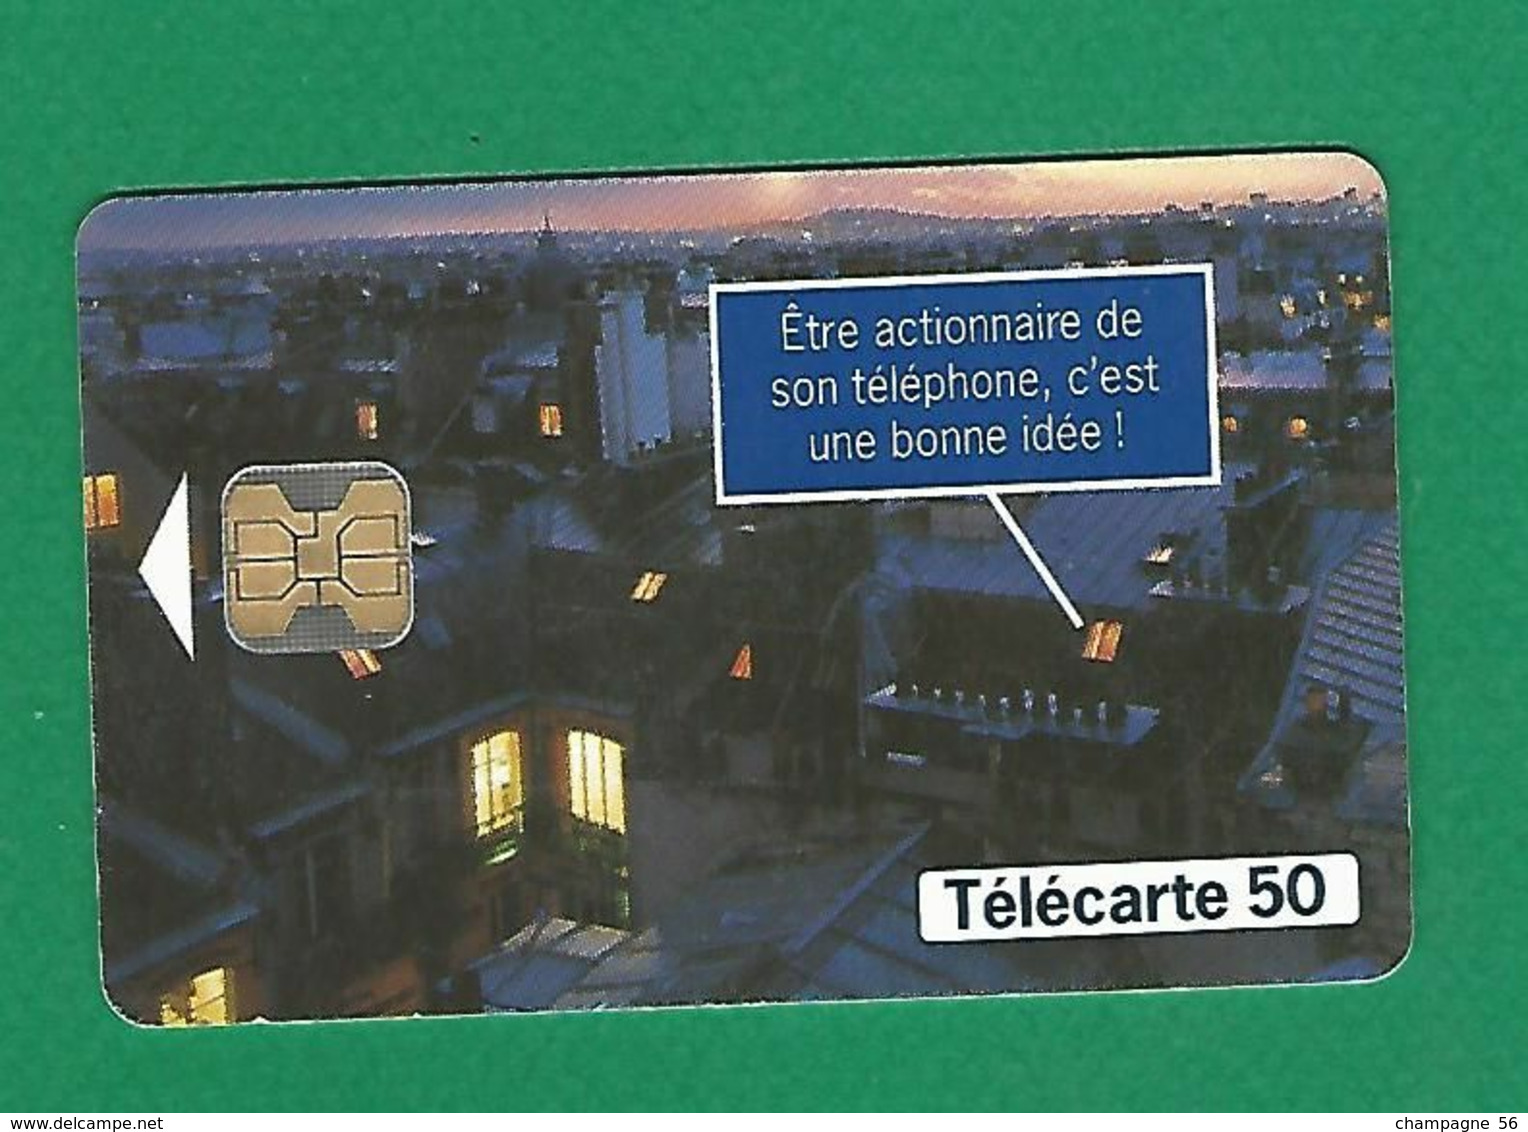 VARIÉTÉS FRANCE 97 F784E 50 / 05/97  OB2  TOITS CAPITAL FRANCE TELECOM  50 UNITES UTILISÉE - Variedades